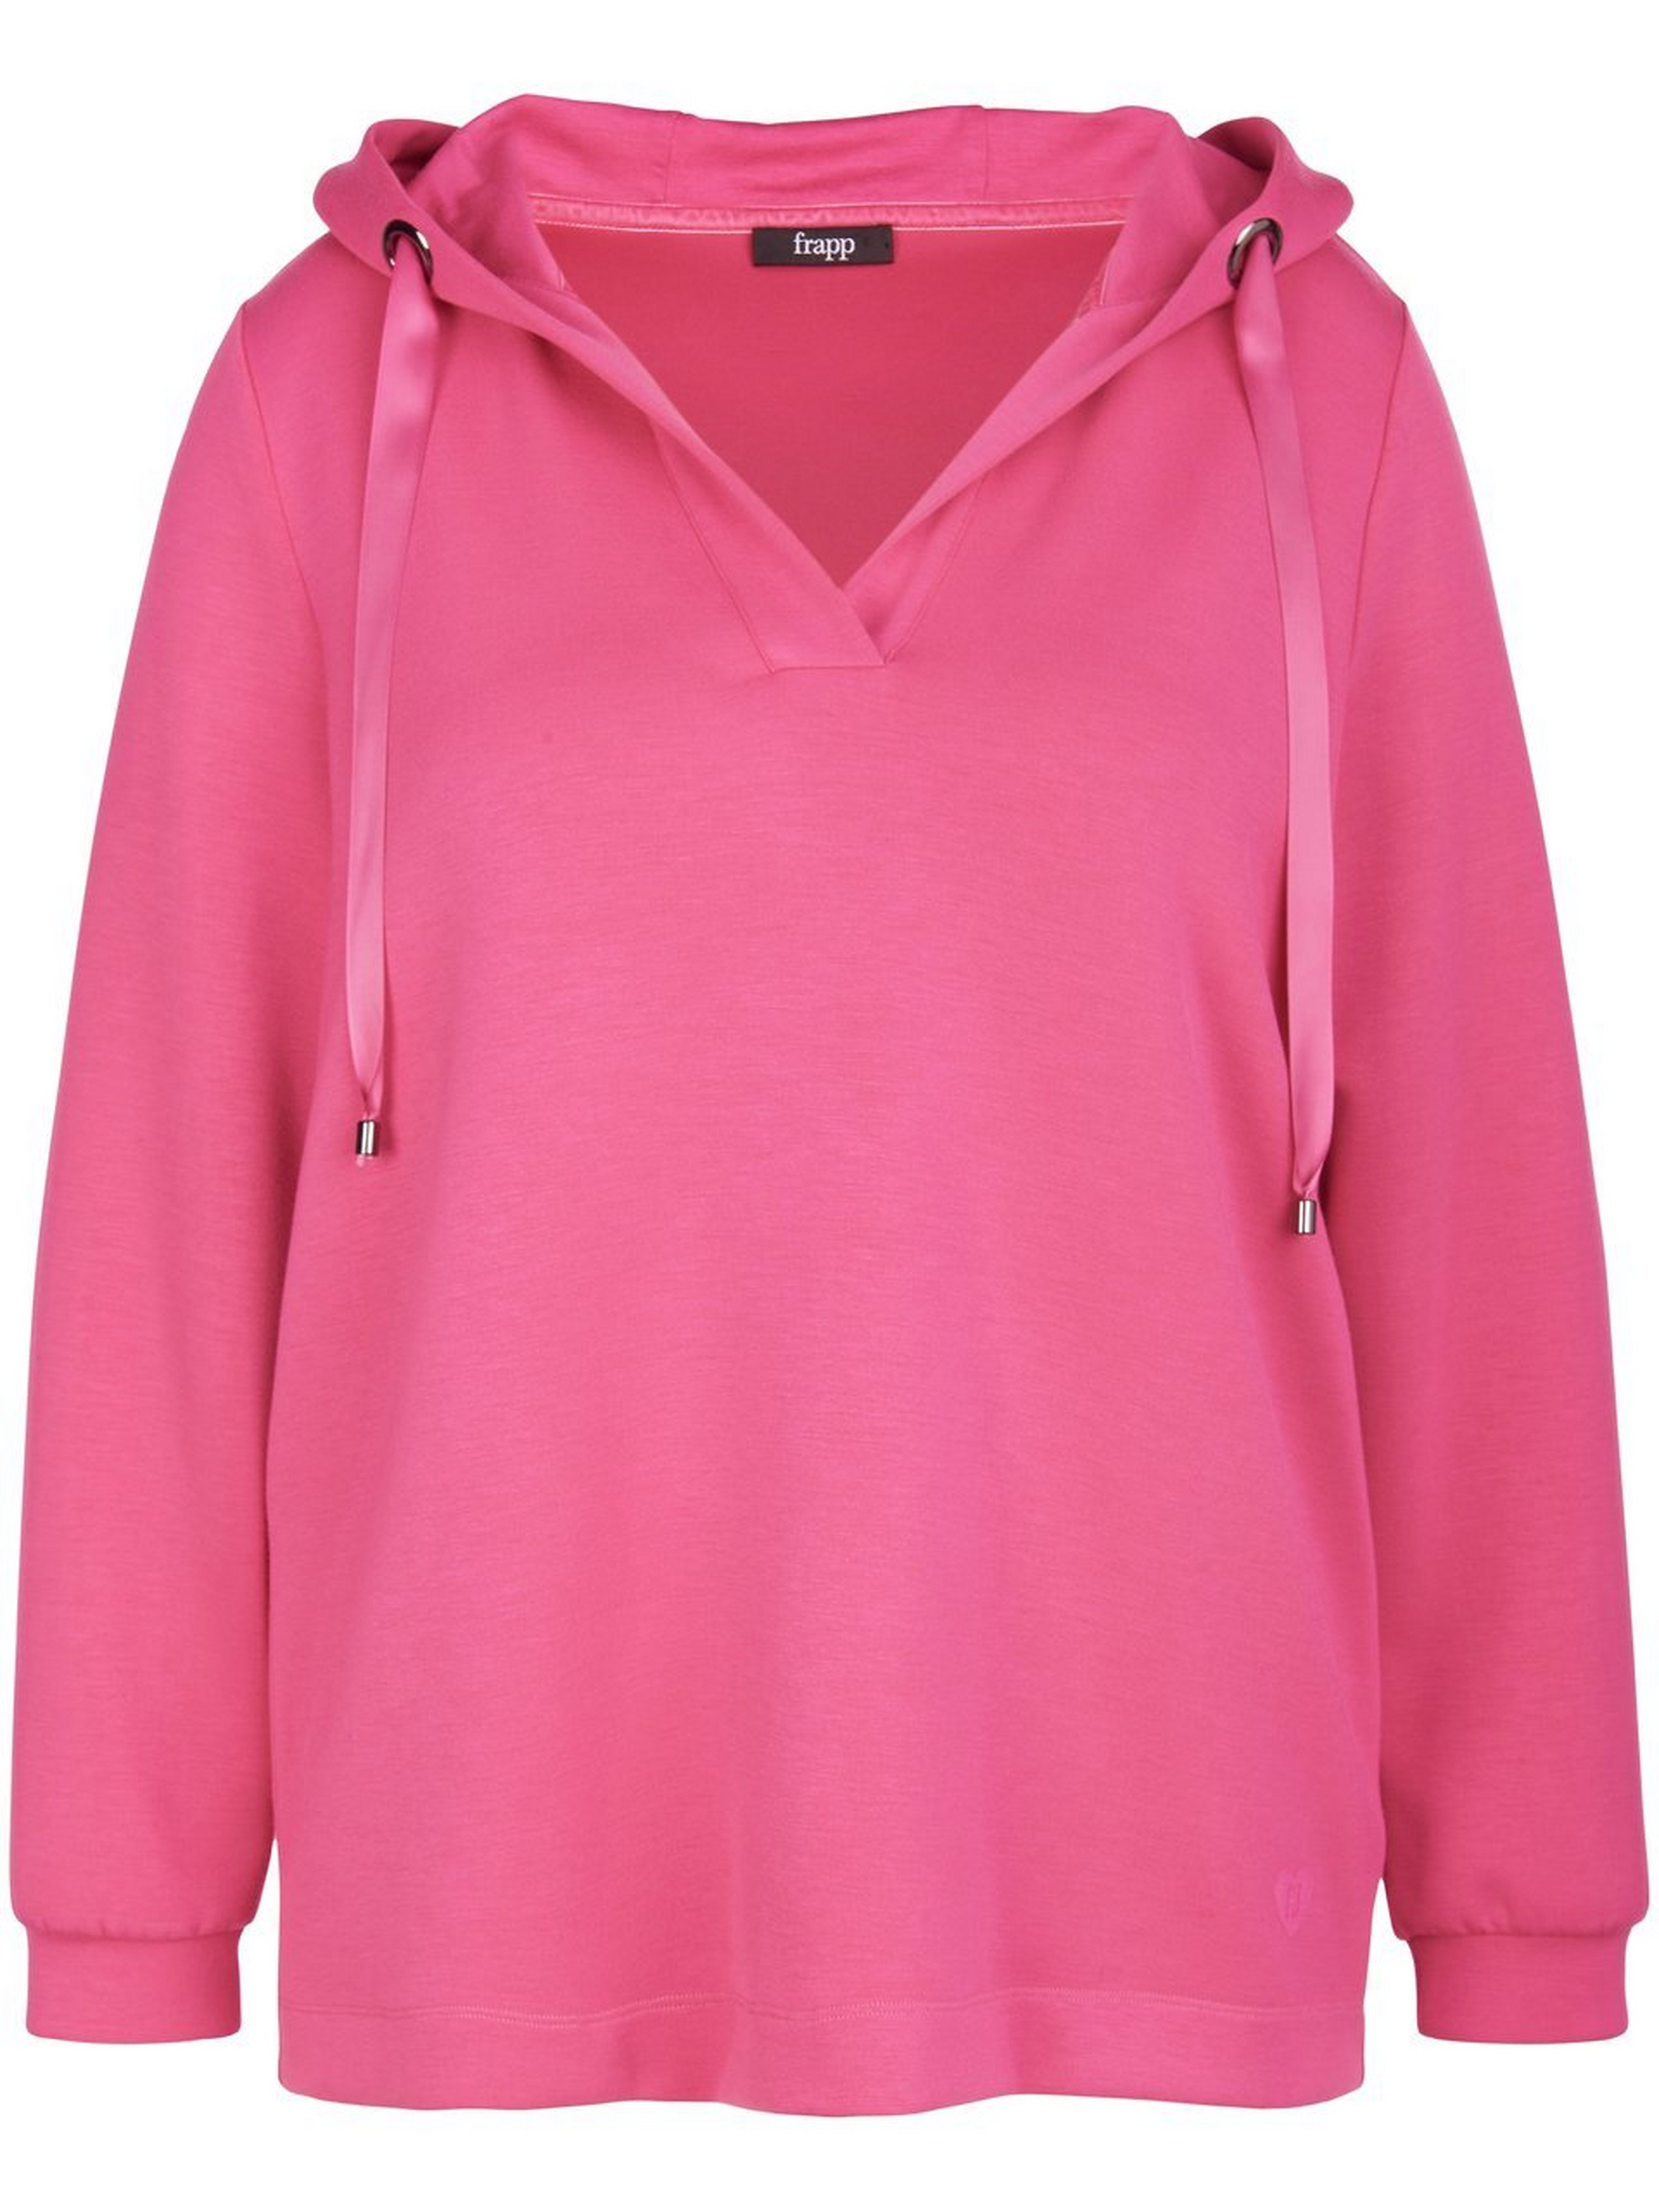 Hoodie sweatshirt lange mouwen Van frapp pink